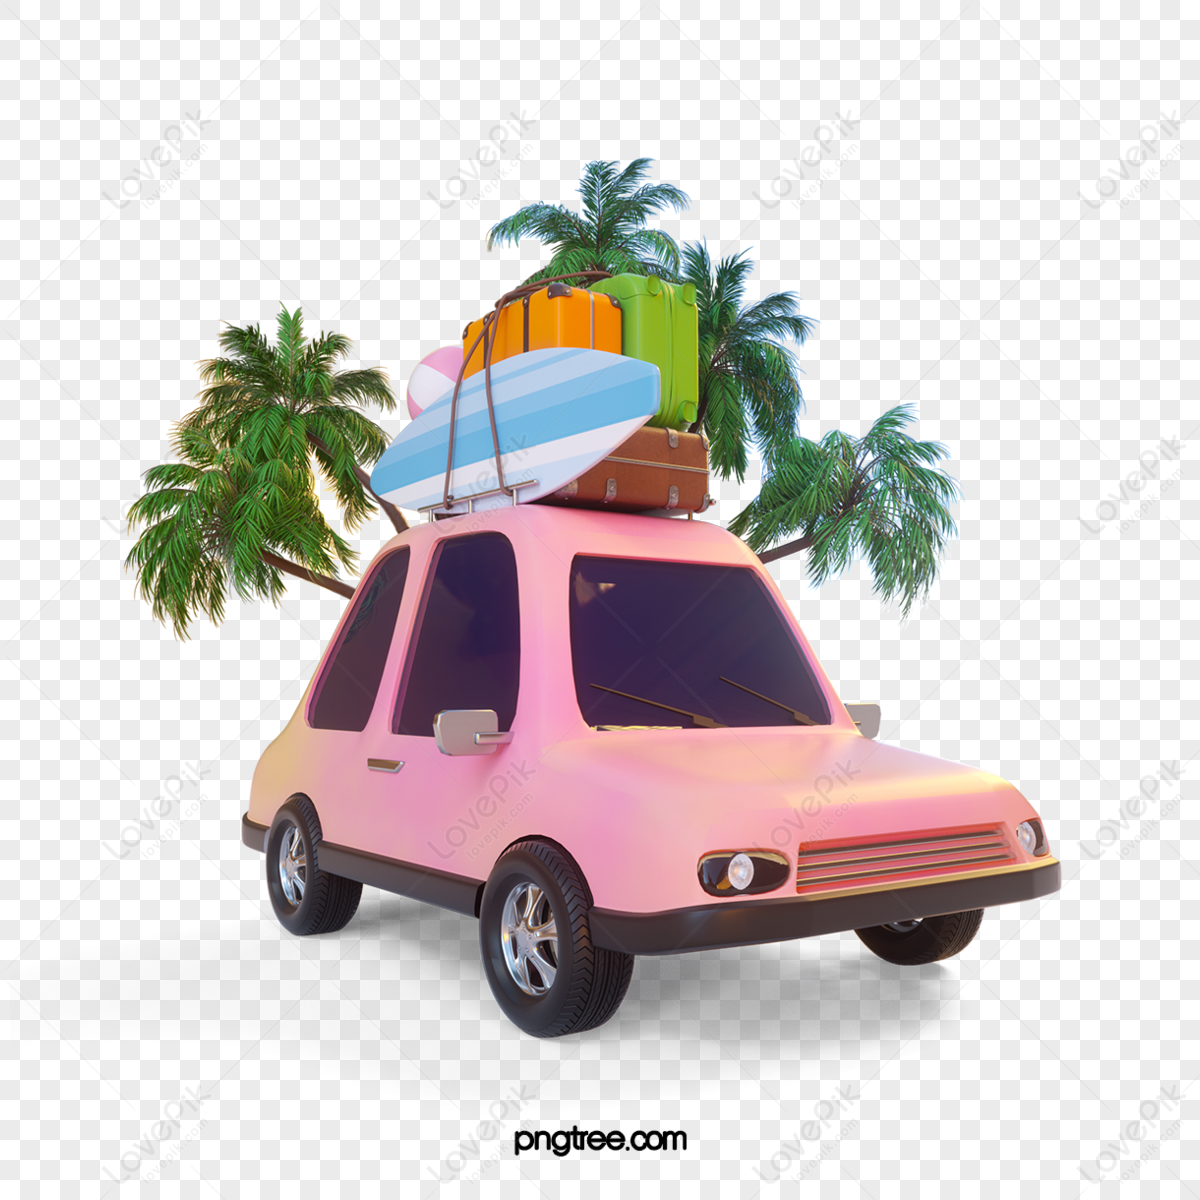 pink car travel 3d element,natural,landscape,transportation png transparent image